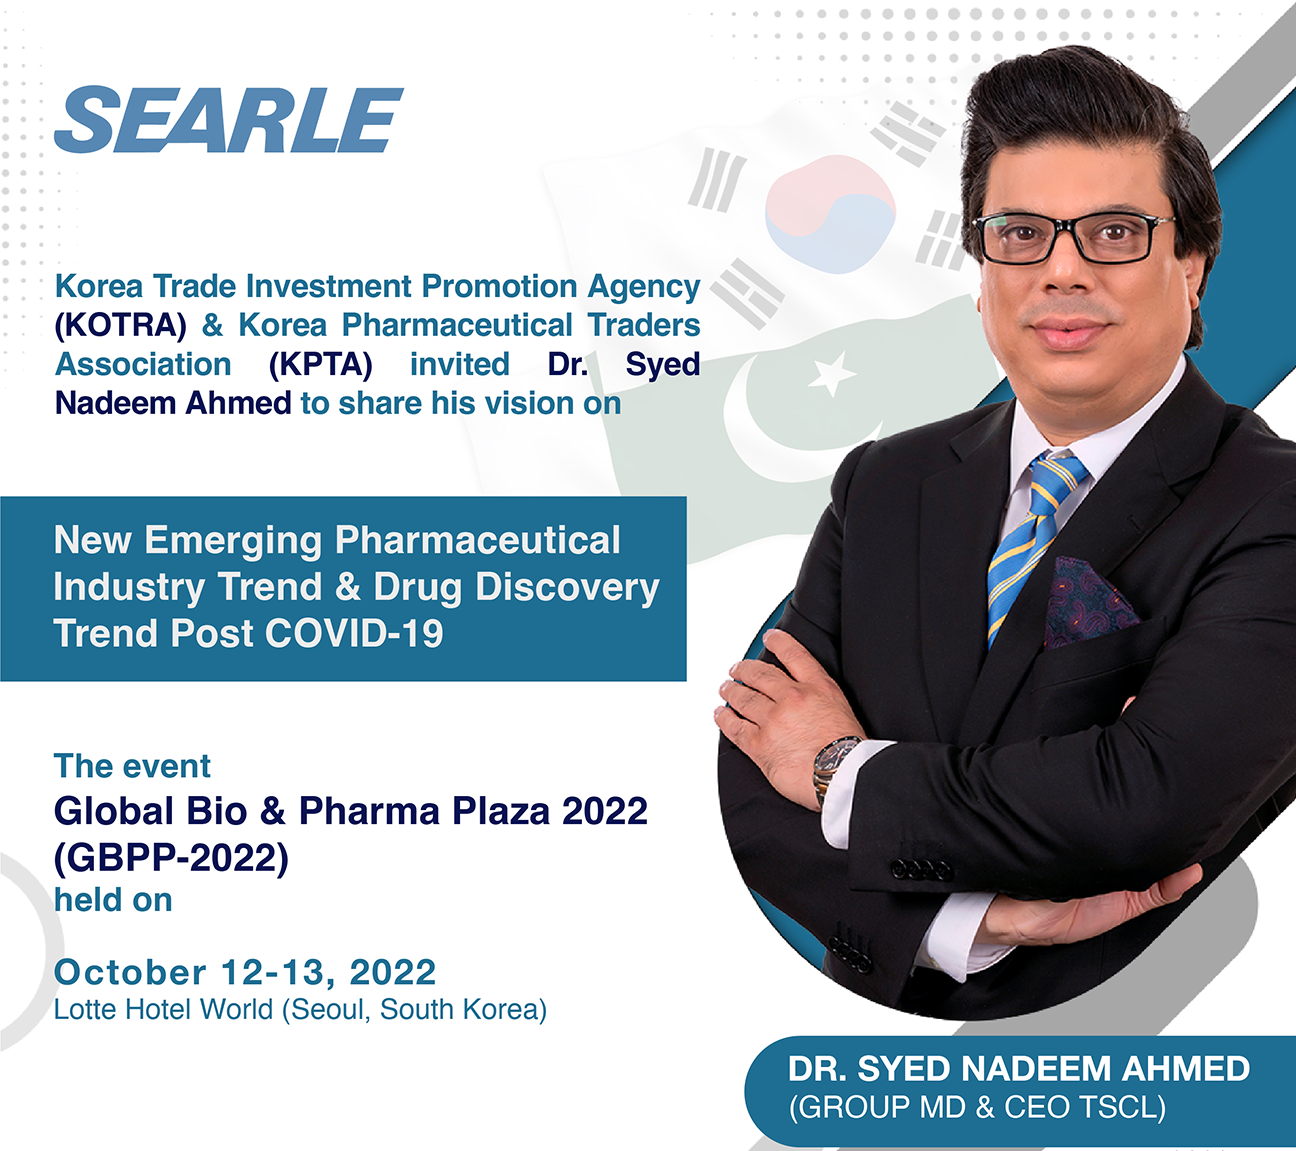 2022 Global Bio & Pharma Plaza (GBPP 2022) – Korea